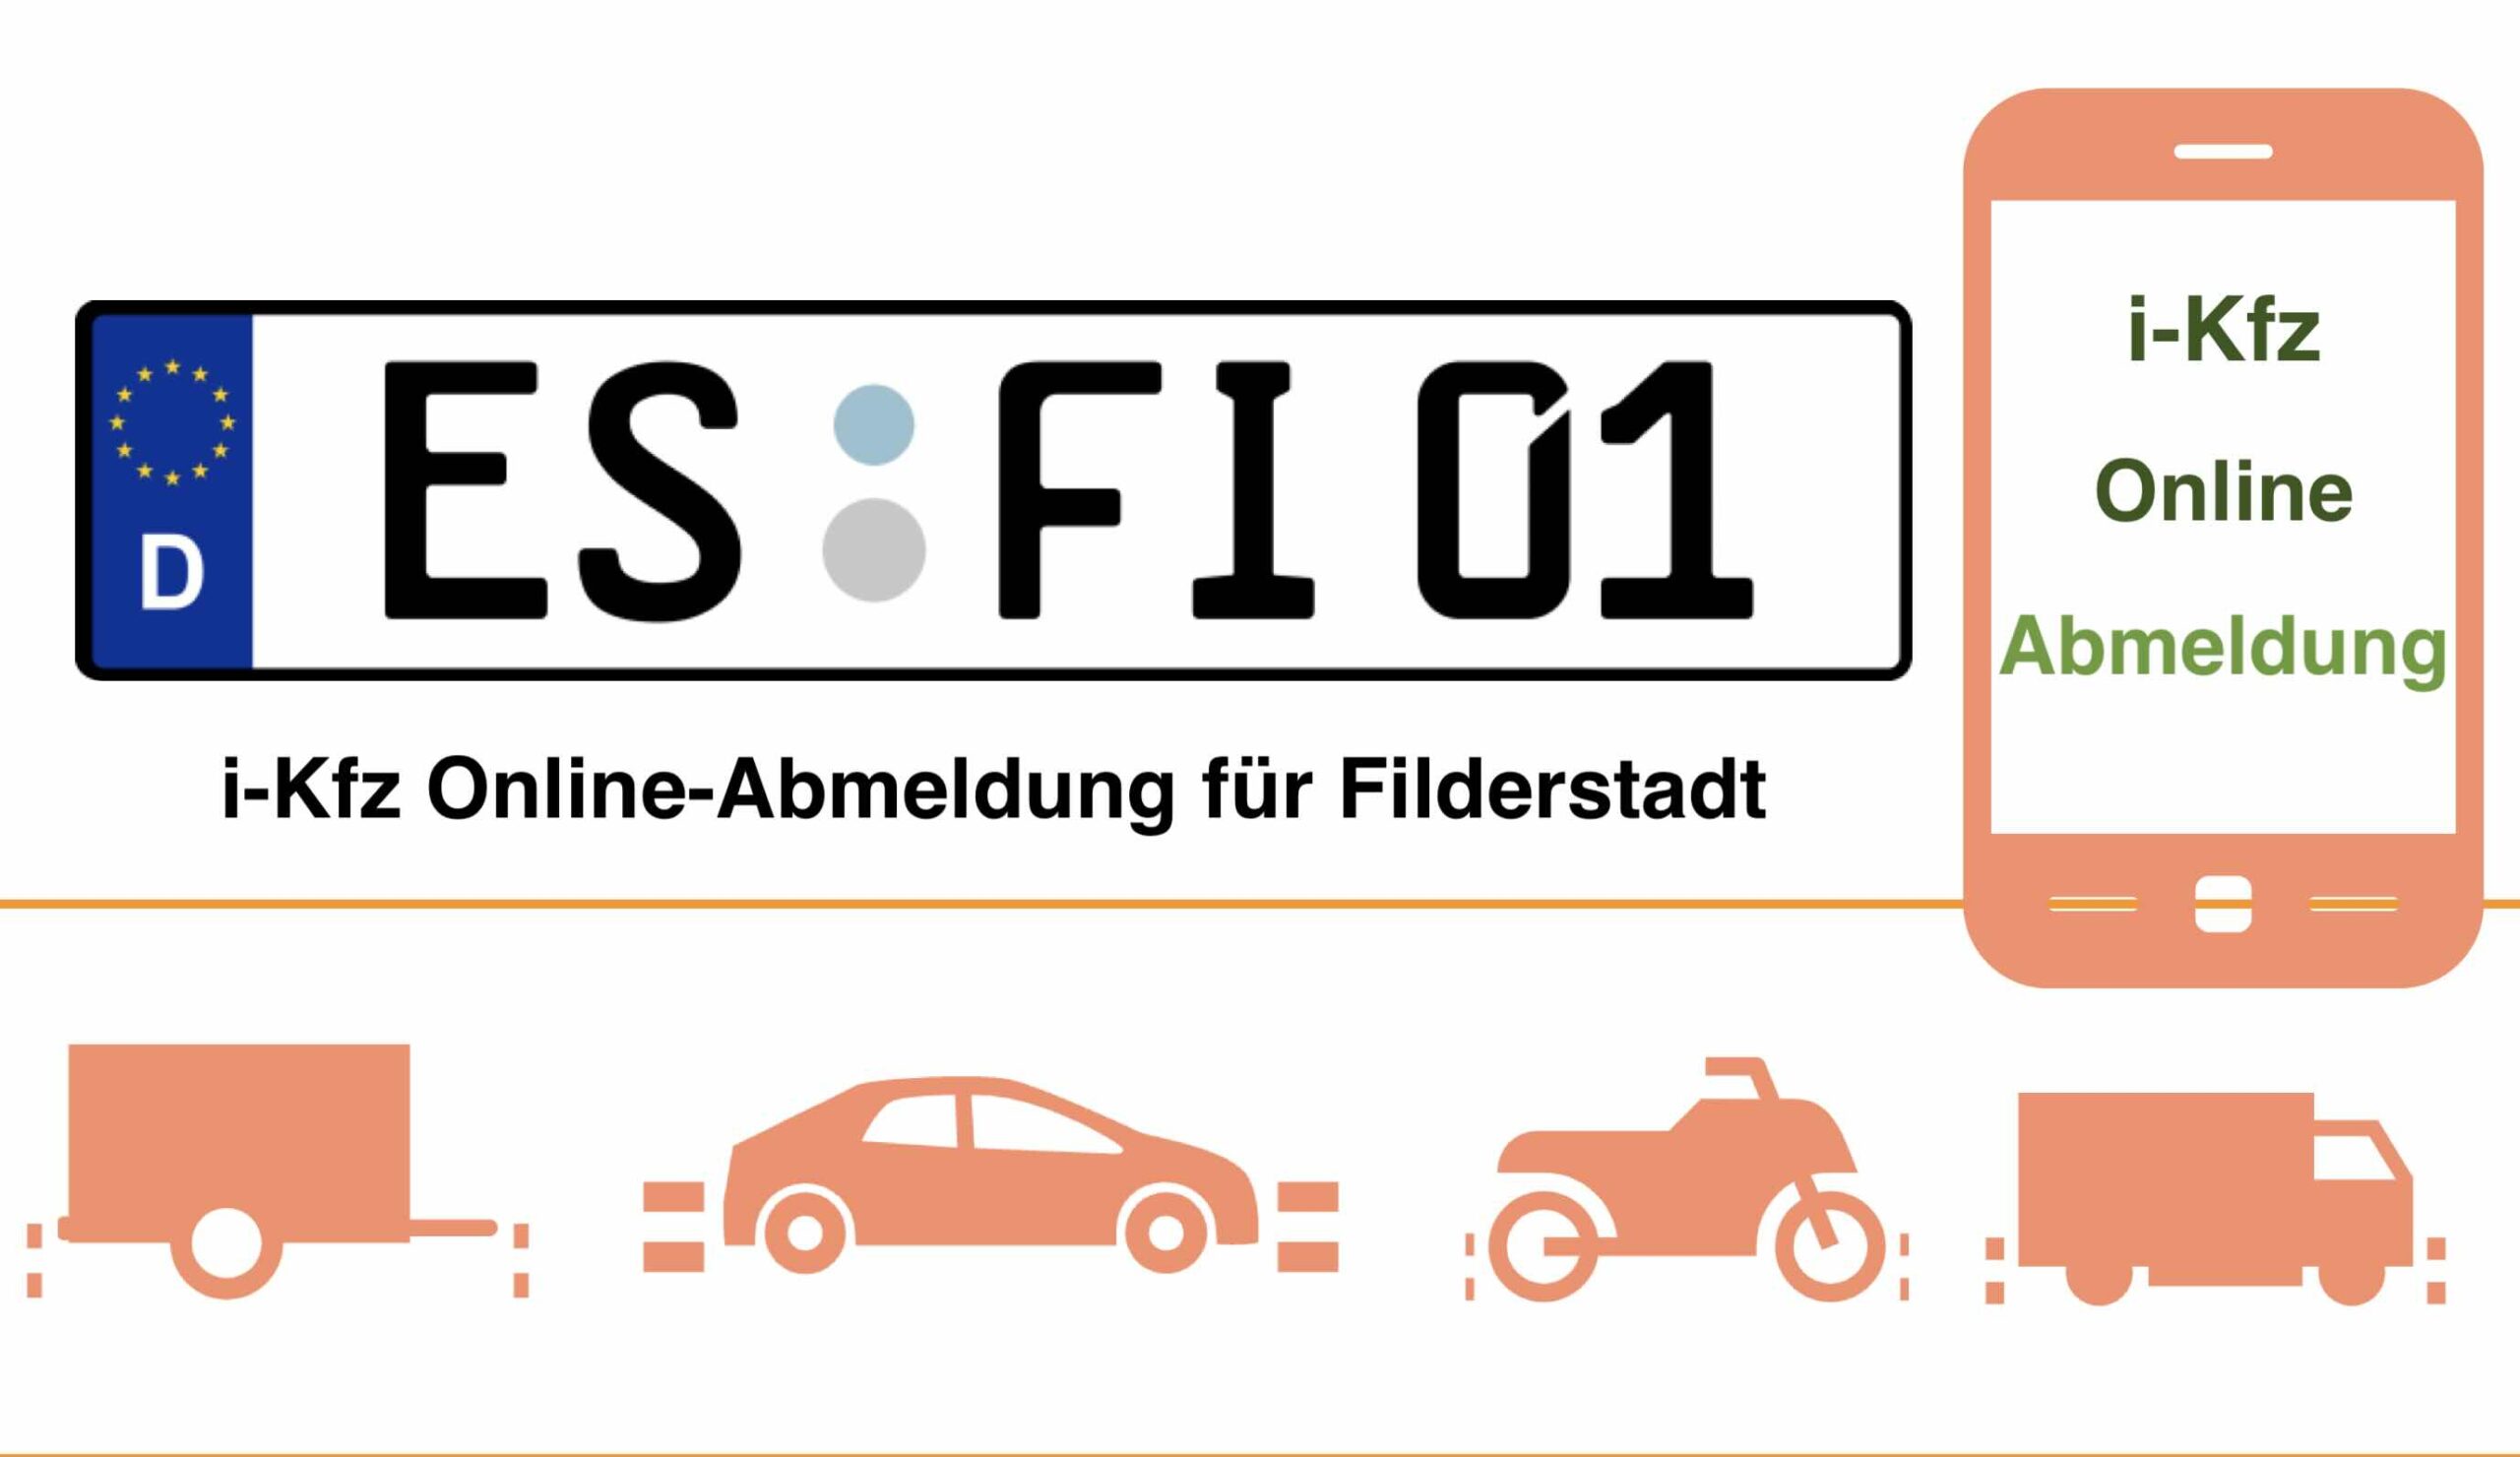 Online-Abmeldung für Filderstadt